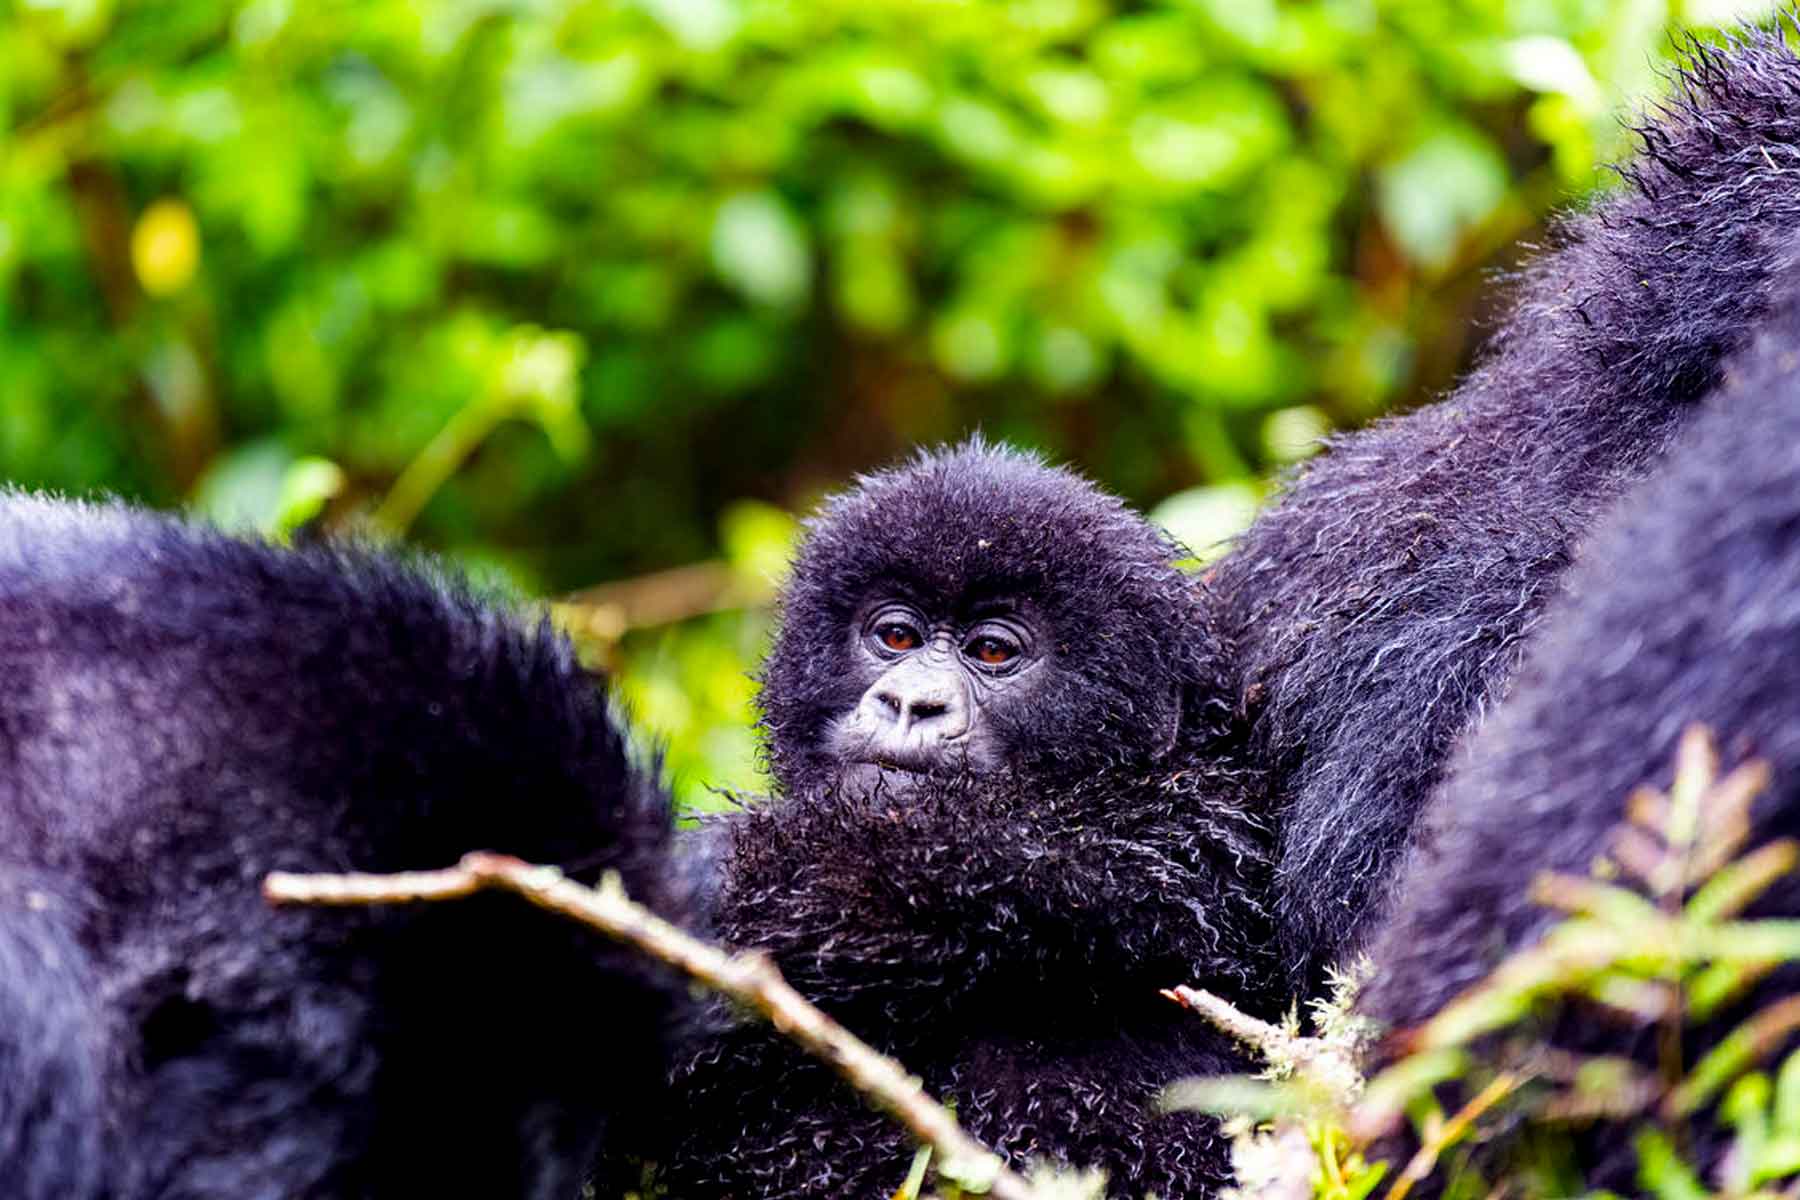 5-days-uganda-gorilla-habituation-safari